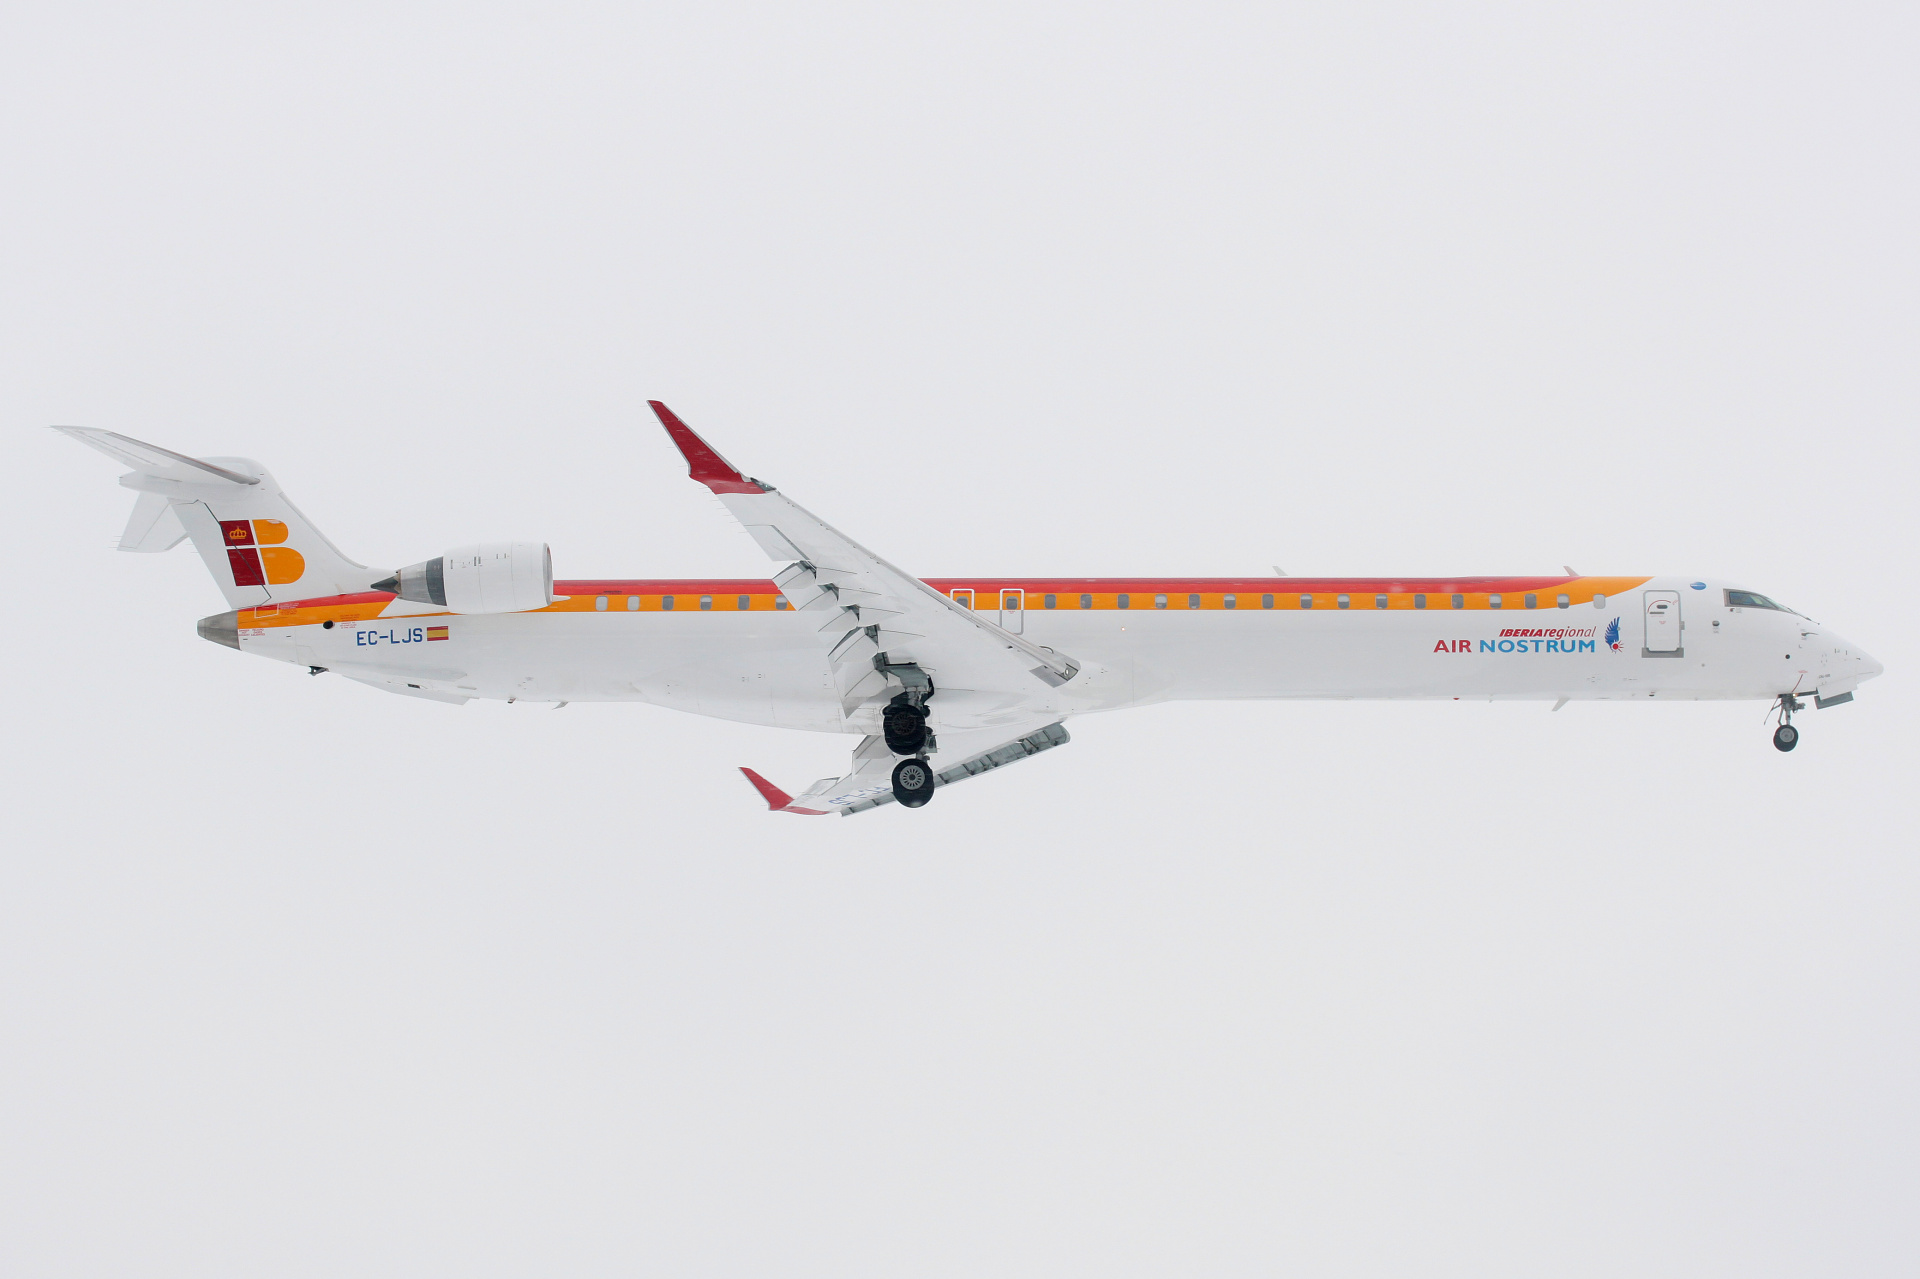 EC-LJS, Iberia Regional (Air Nostrum) (Aircraft » EPWA Spotting » Mitsubishi Regional Jet » CRJ-1000)